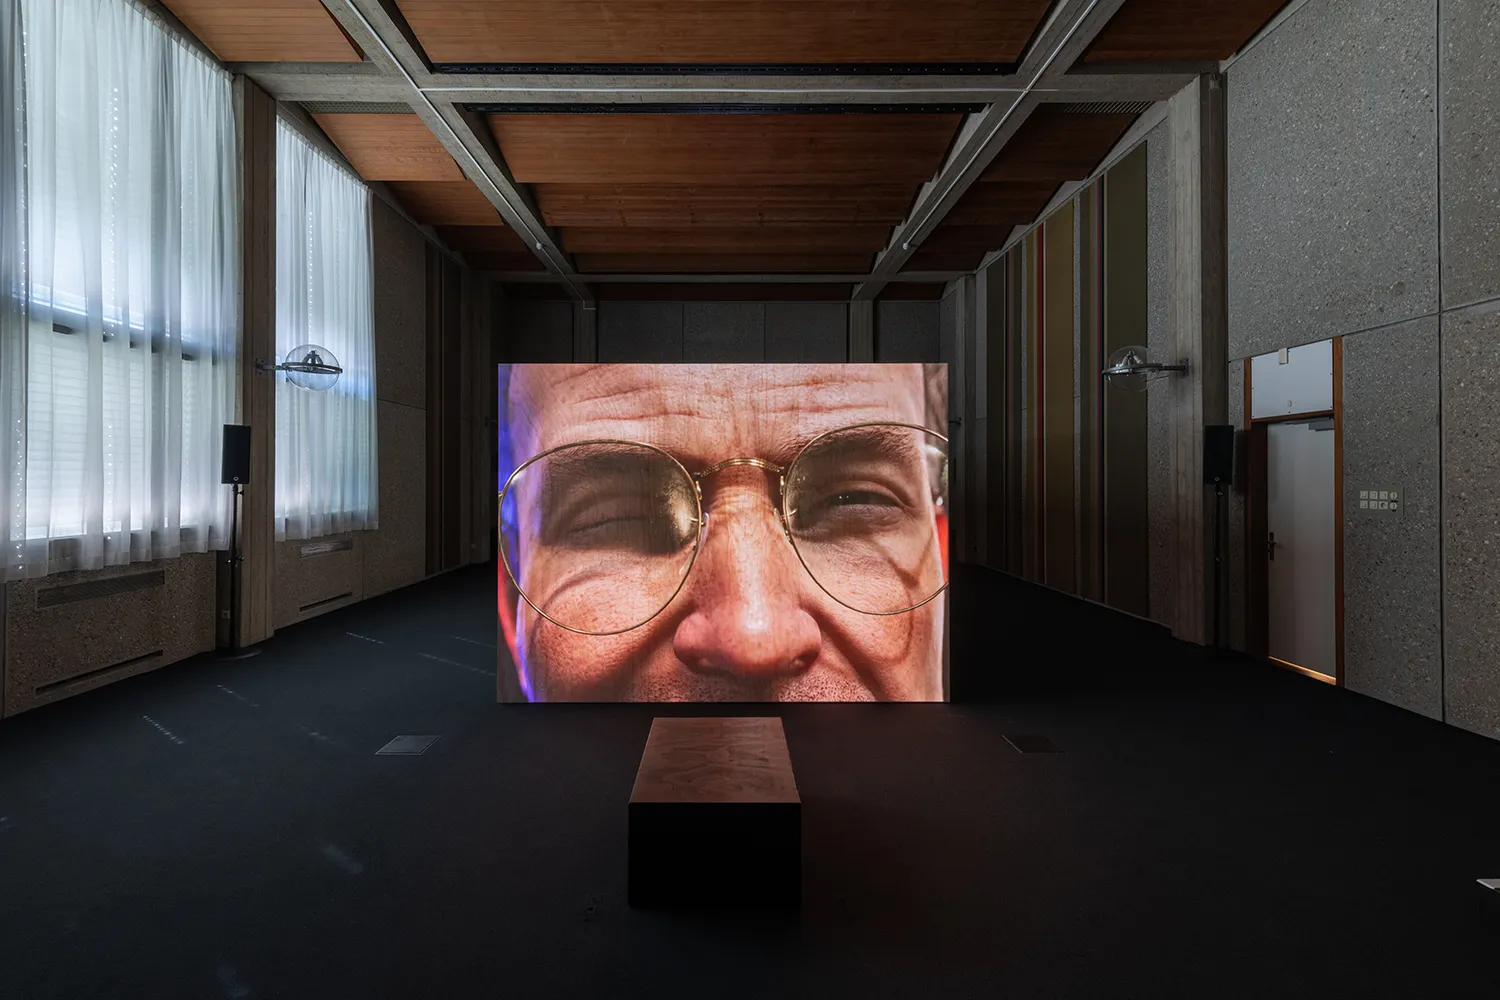 Projectie van een close-up digitaal personage op een houten kist in een voormalige rechtszaal